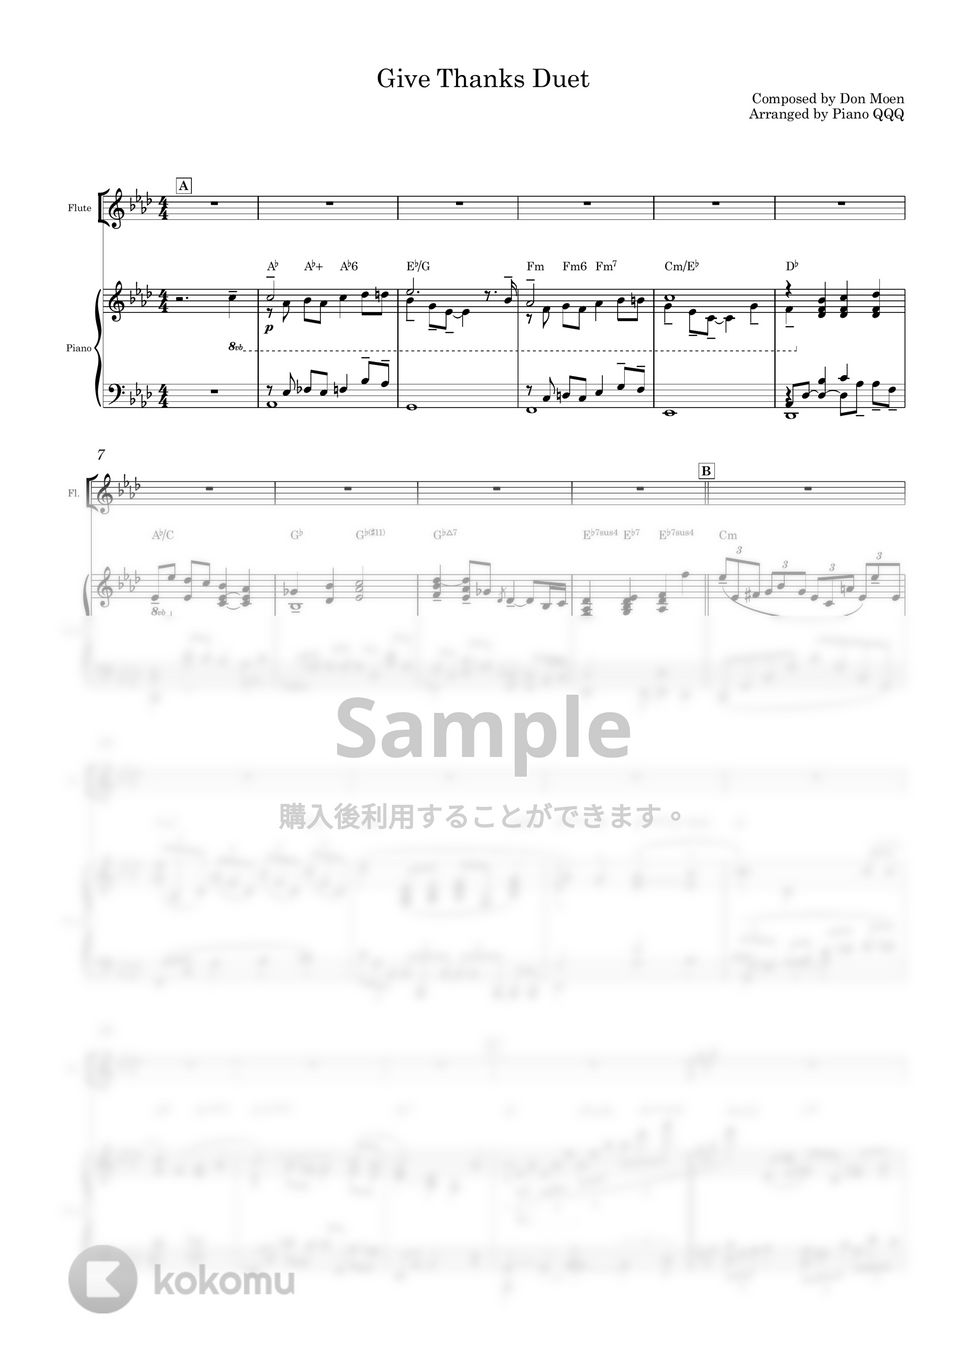 Don Moen - Give Thanks (デュエット/ピアノと楽器) by Piano QQQ